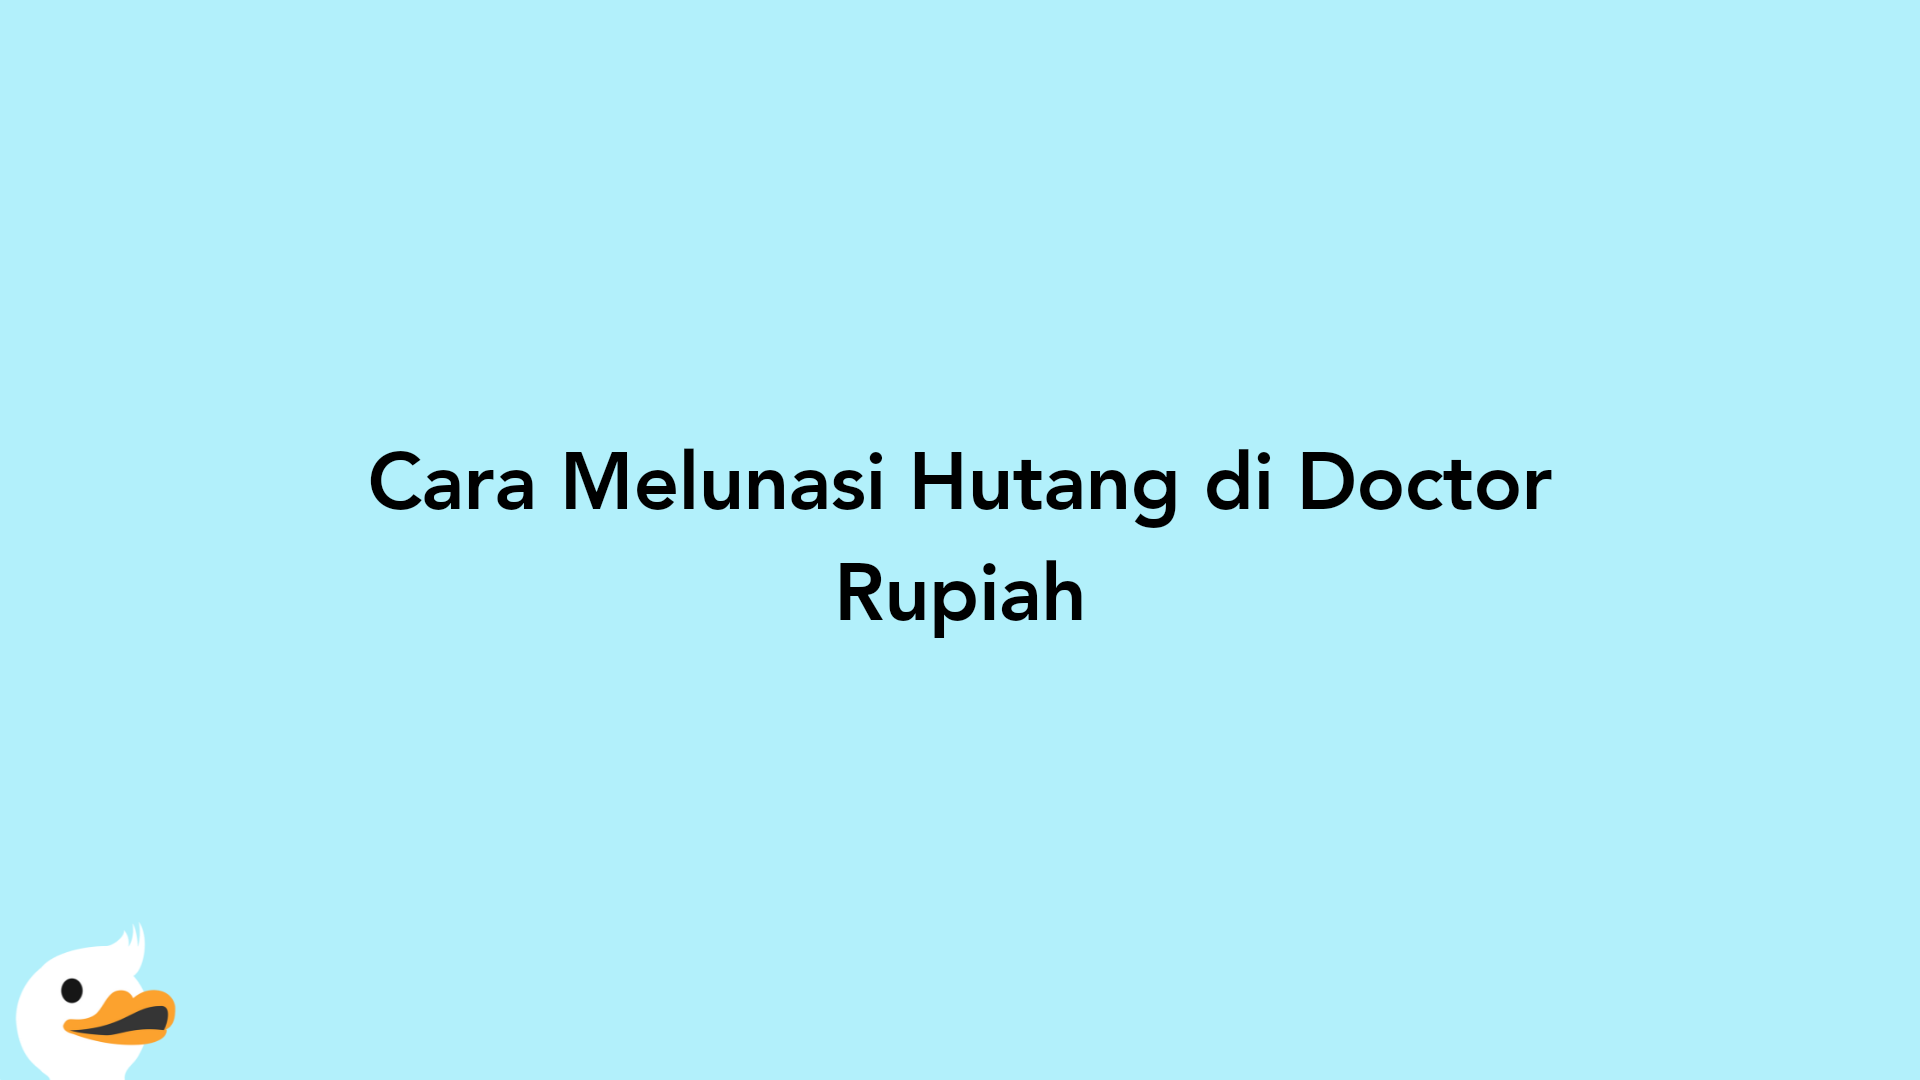 Cara Melunasi Hutang di Doctor Rupiah